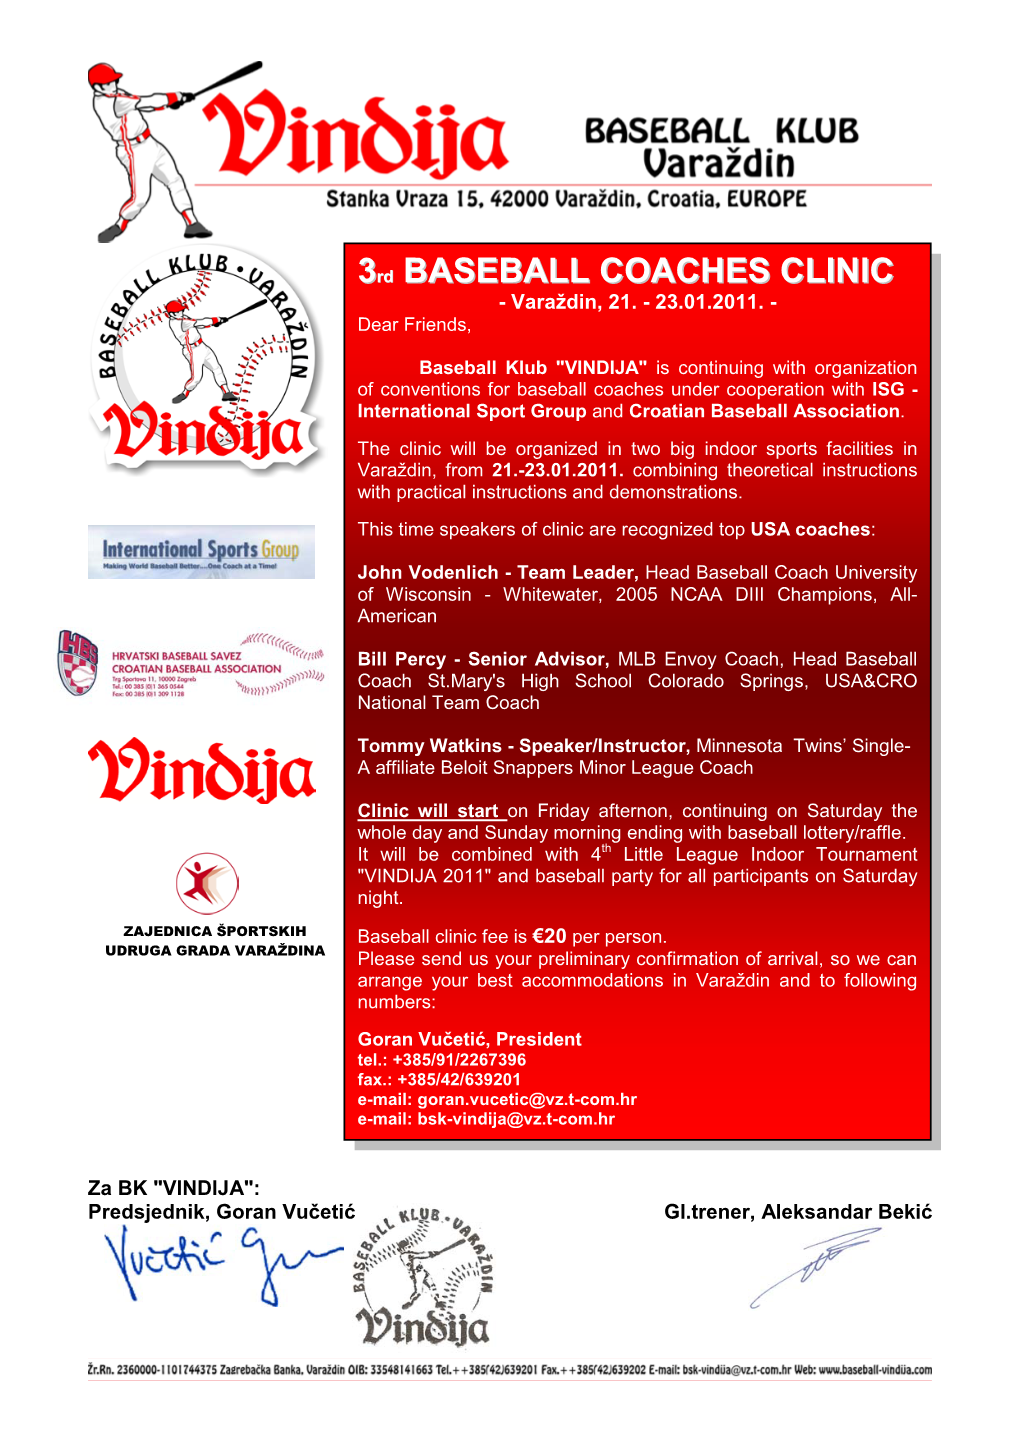 Tommy Watkins - Speaker/Instructor, Minnesota Twins’ Single- a Affiliate Beloit Snappers Minor League Coach